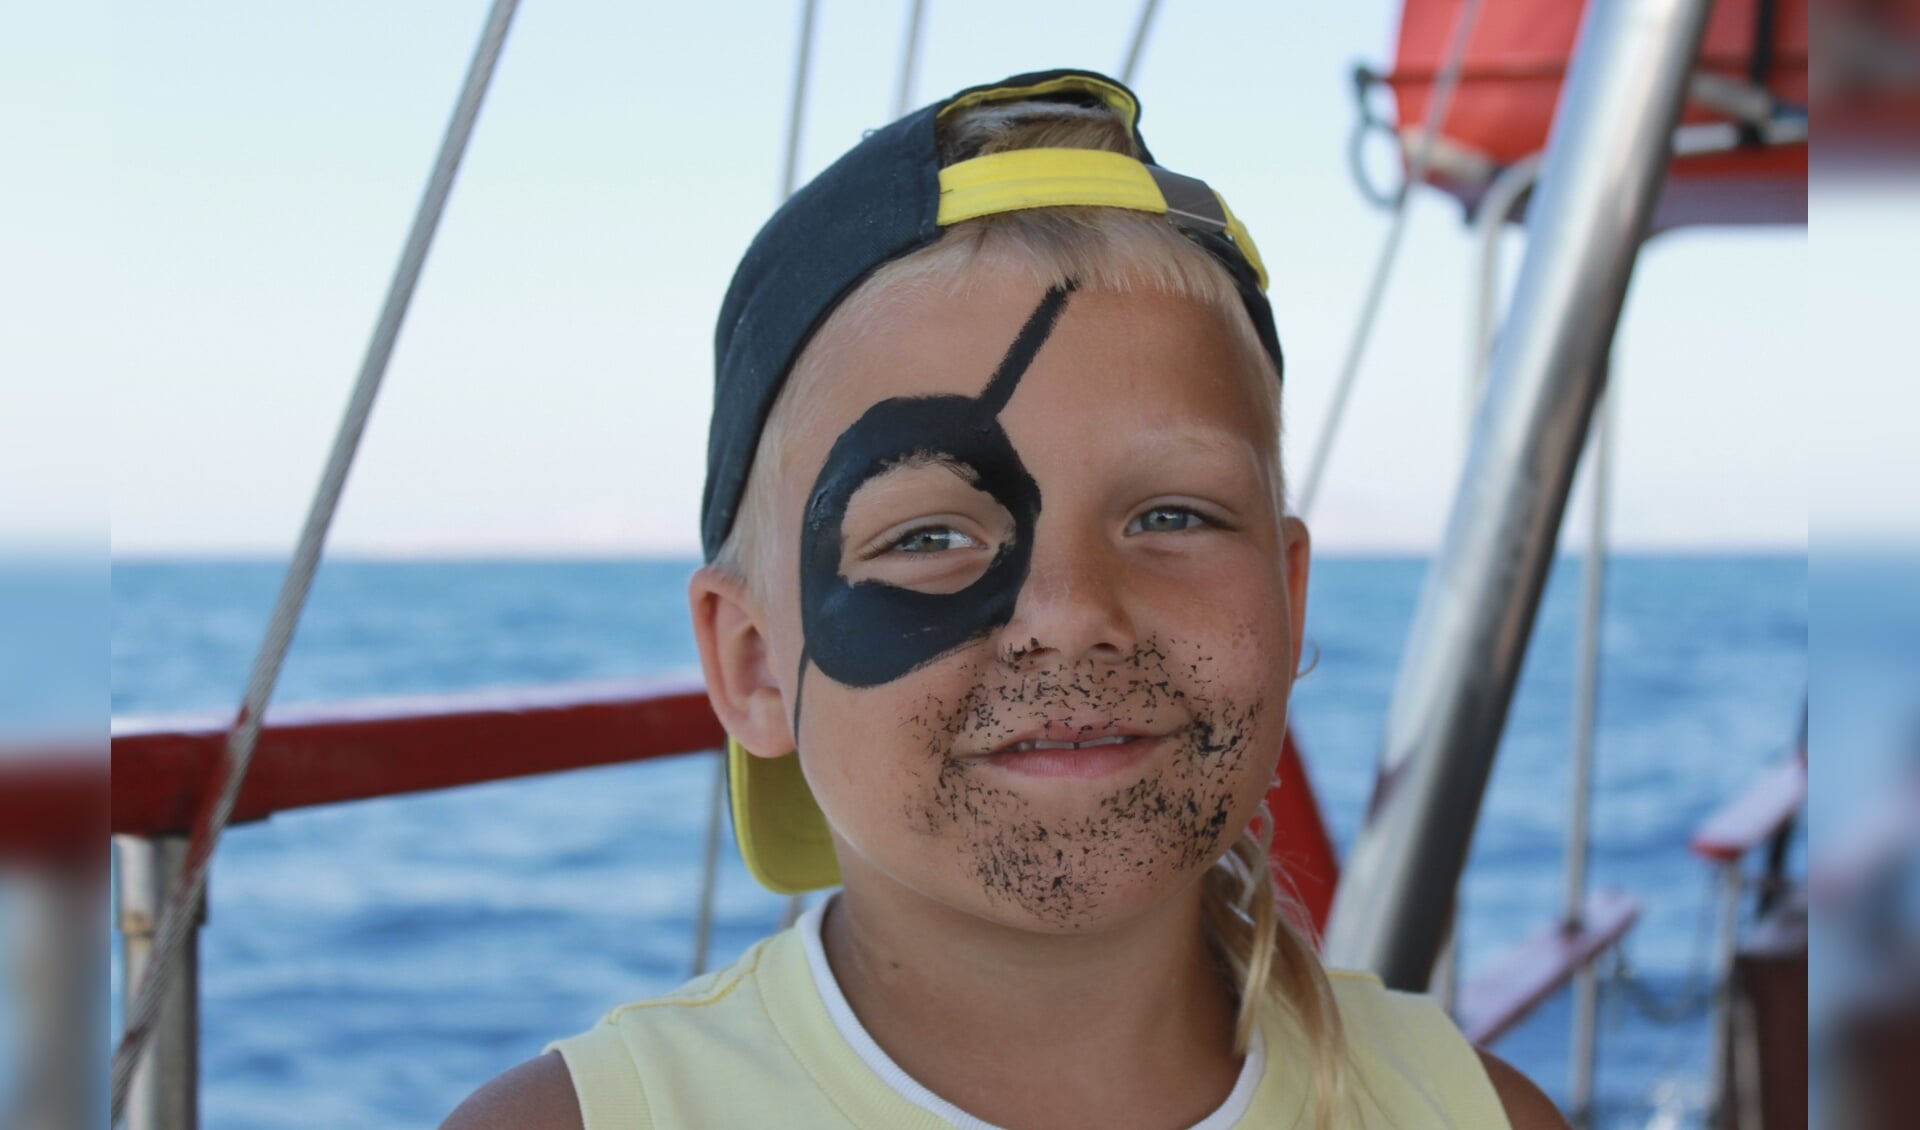 Kinderen kunnen zichzelf laten schminken tot levensechte piraat op 31 juli.  